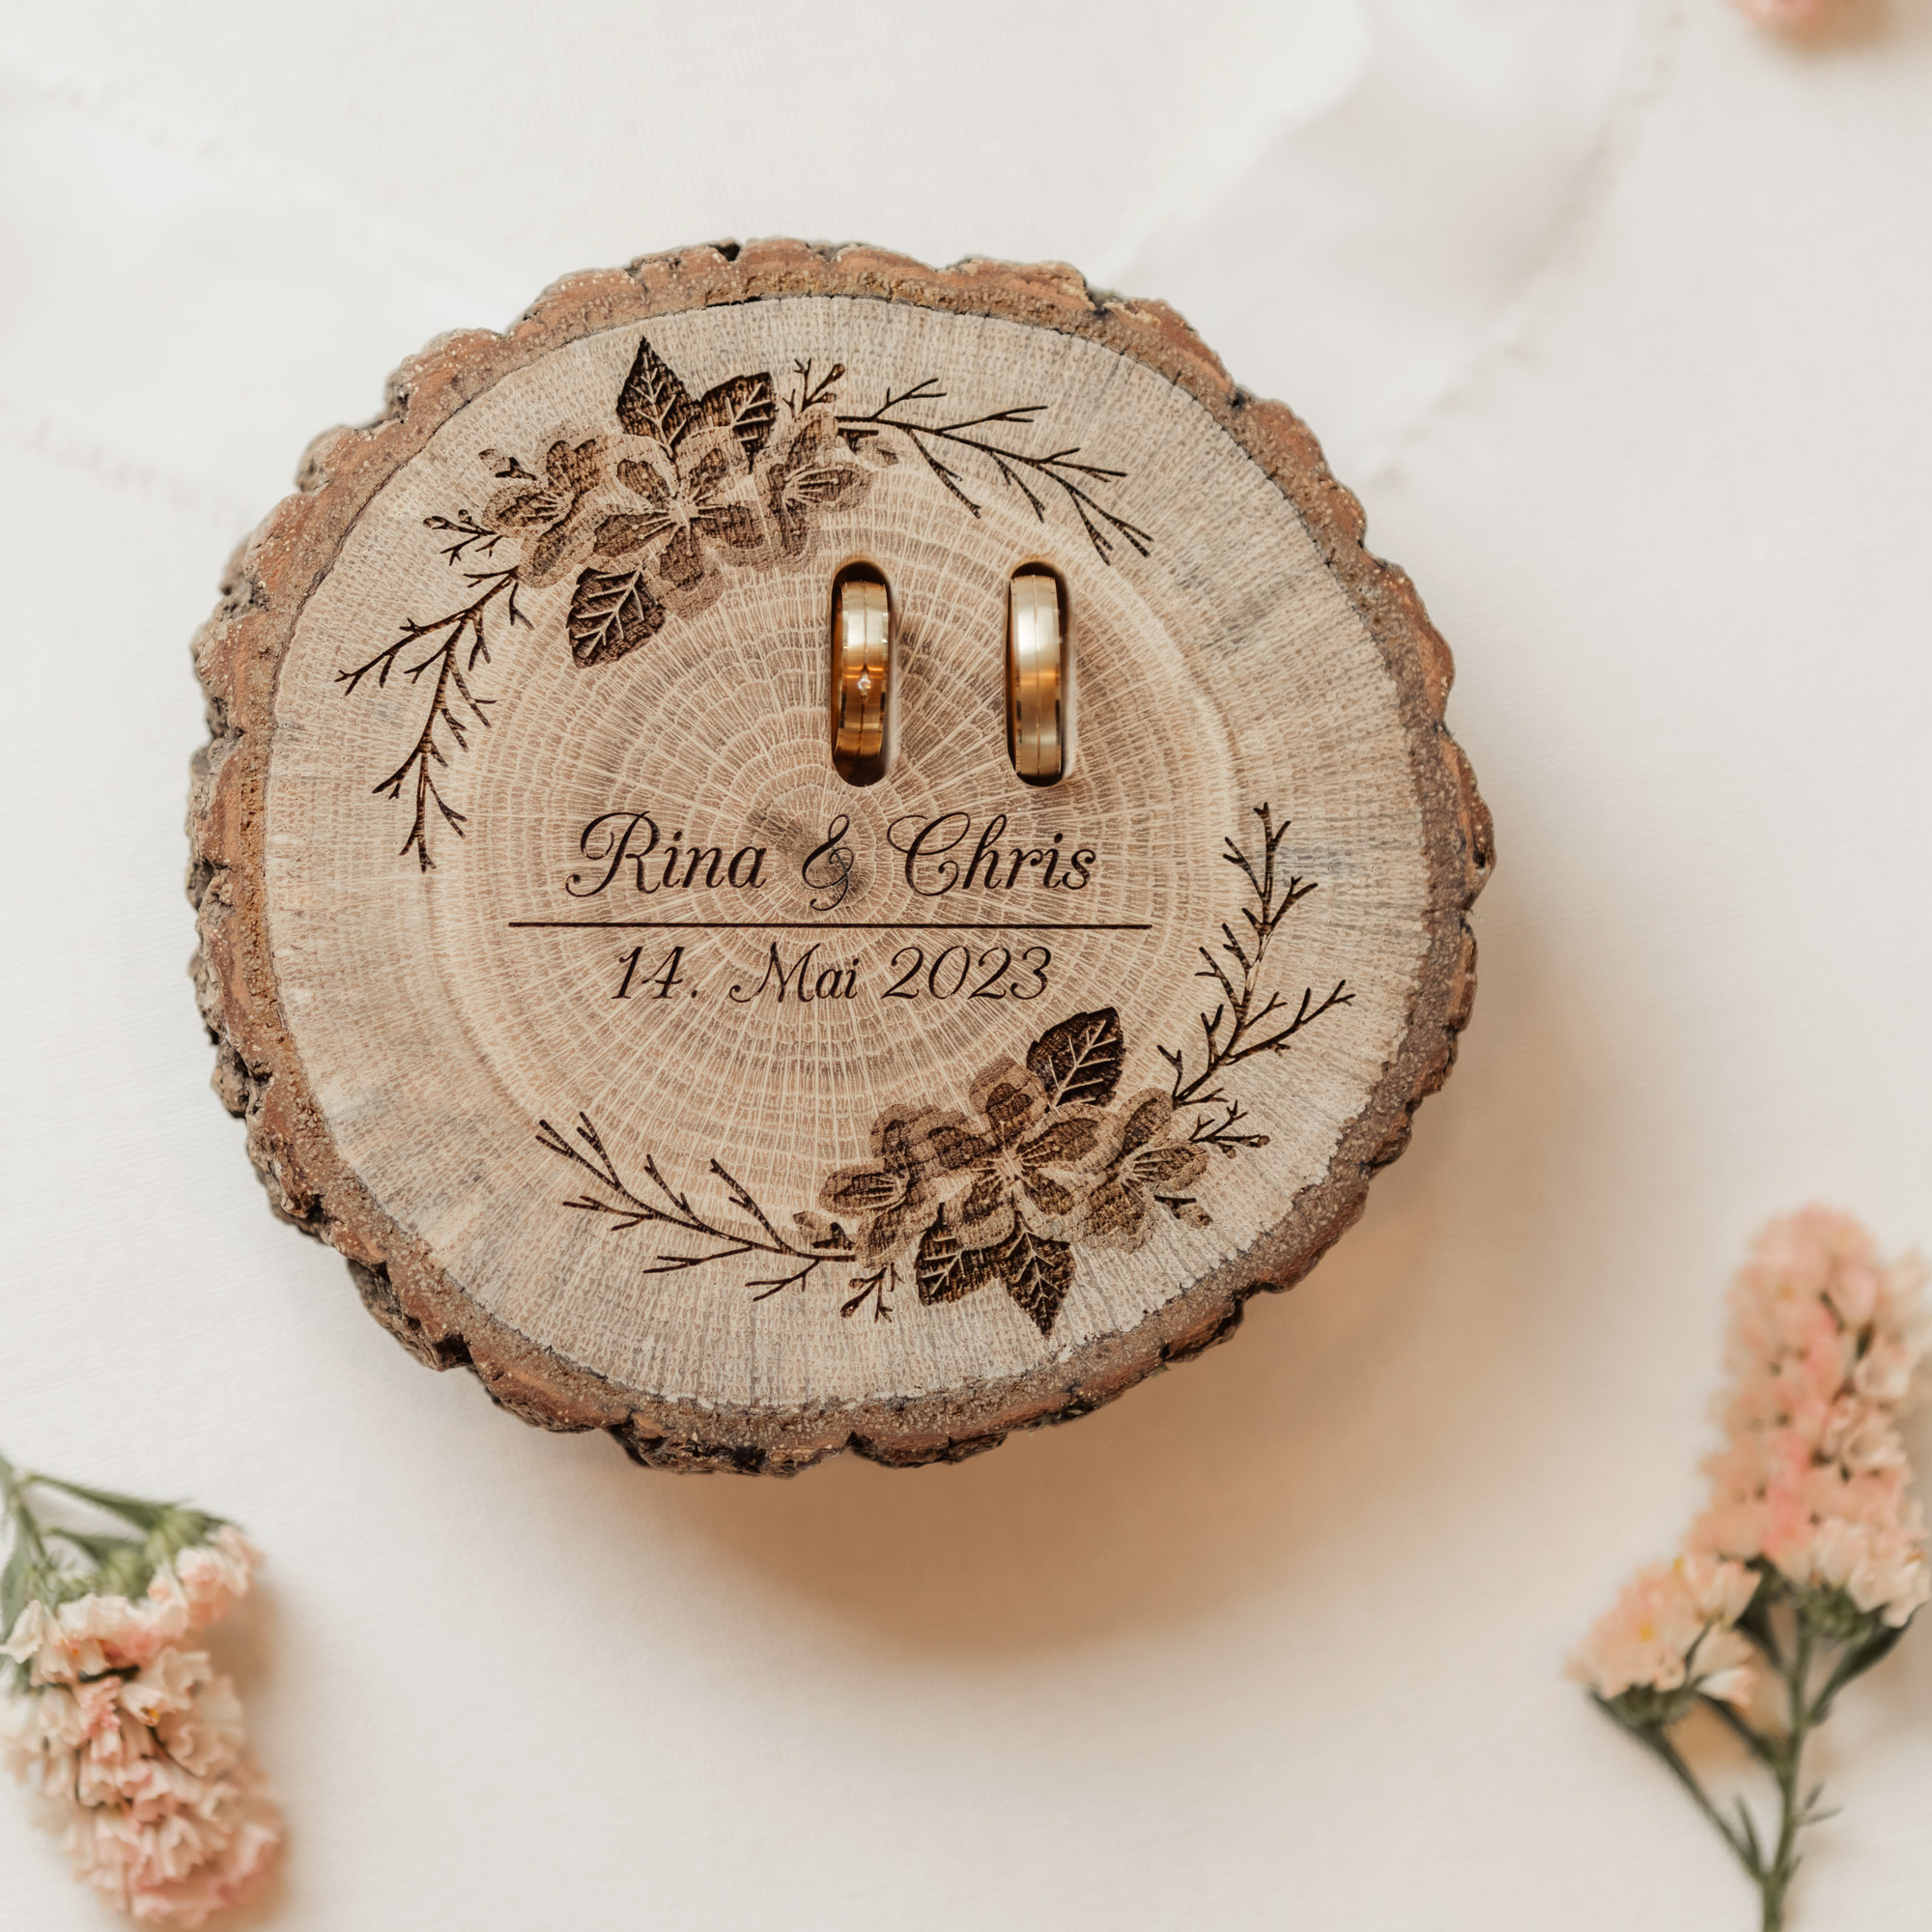 Einzigartiges Ringkissen aus Holz für Eure Hochzeit mit individueller Gravur